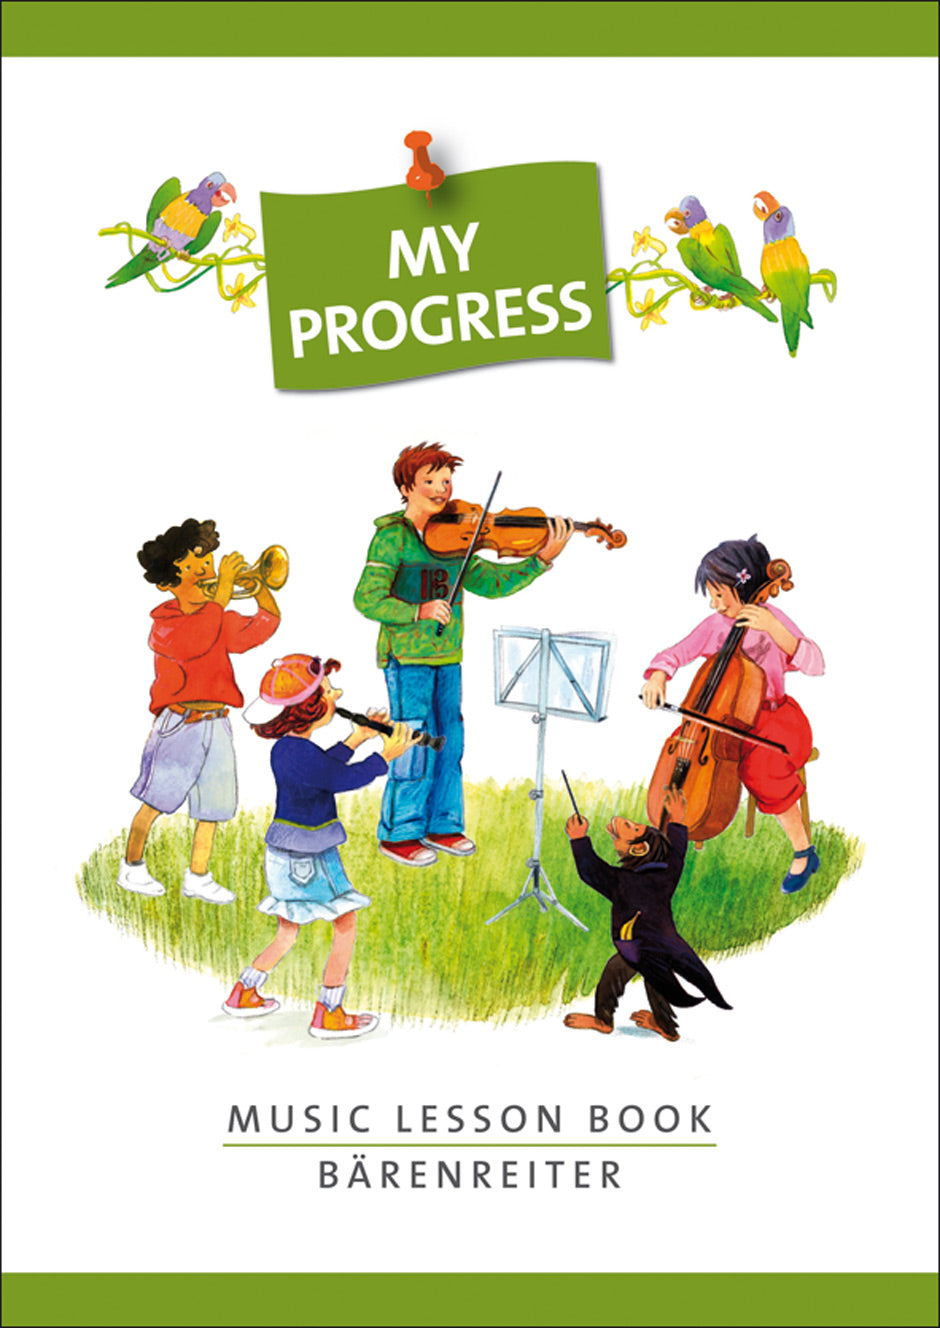 Lesson Book "My Progress"